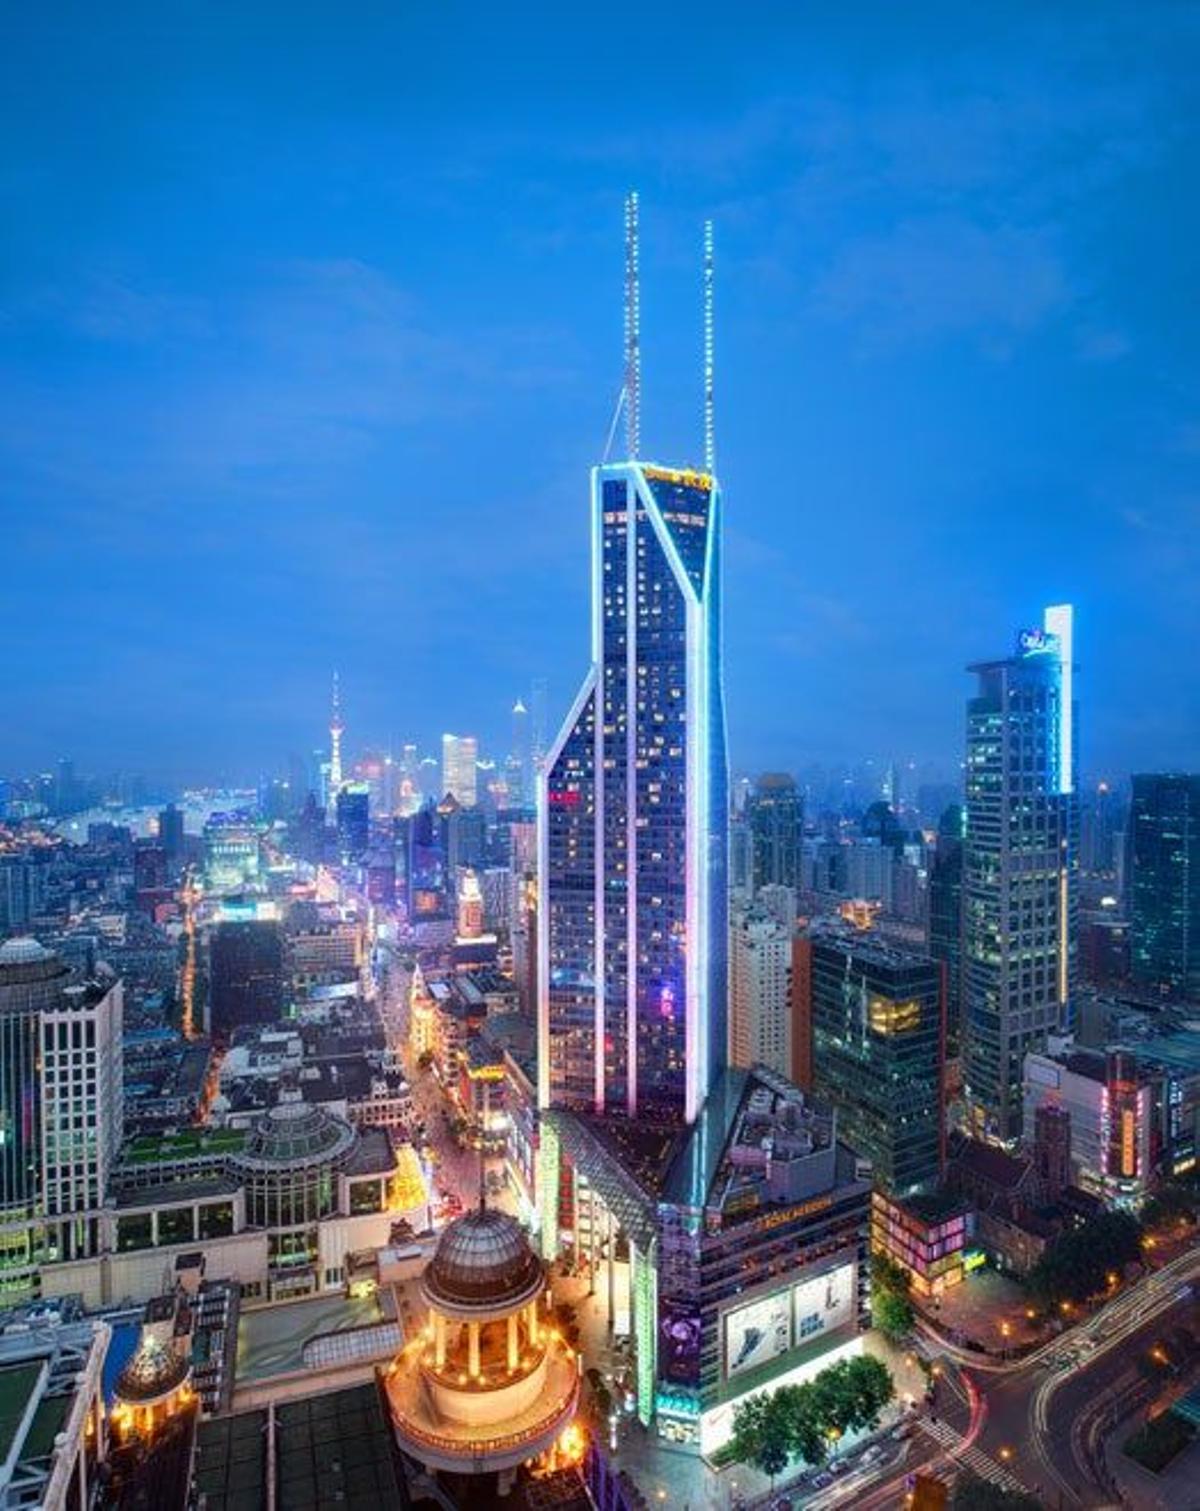 Asomarse a las intensas calles de Shanghái, la ciudad del futuro